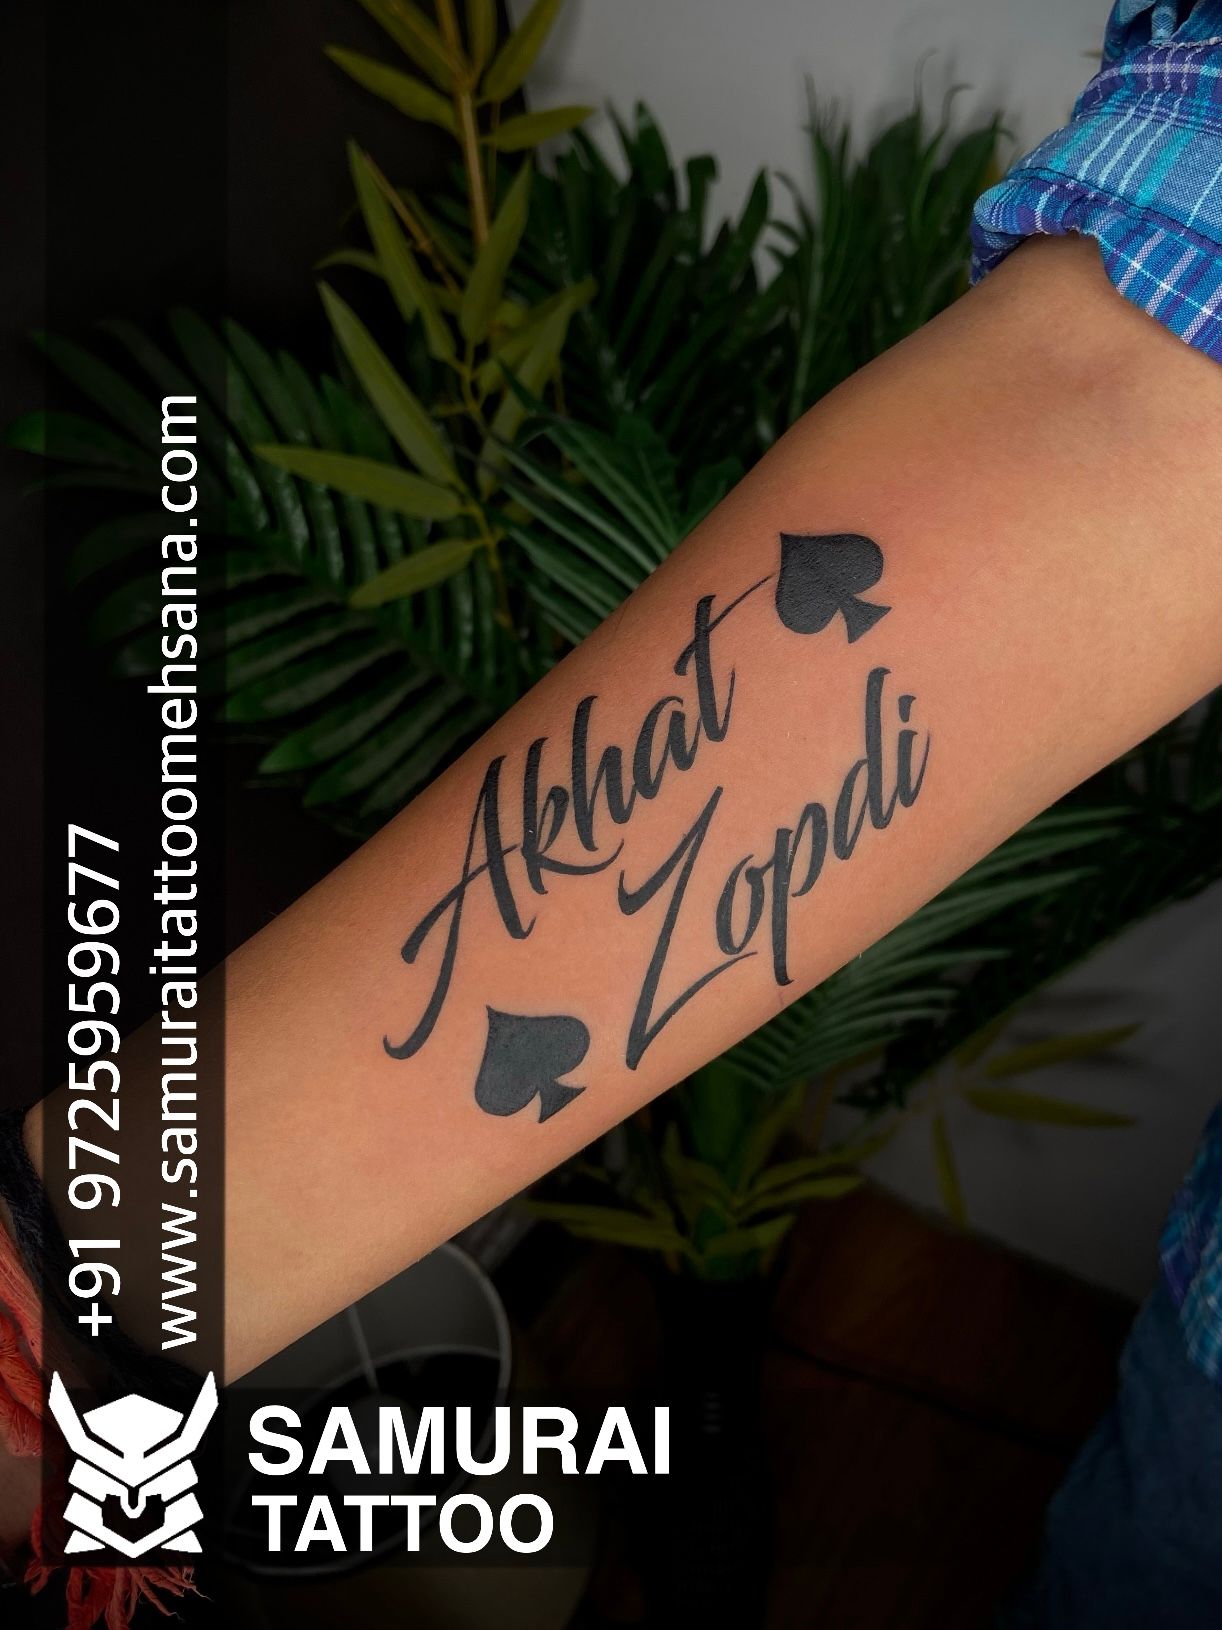 Aggregate 77 about swapnil name tattoo super hot  indaotaonec